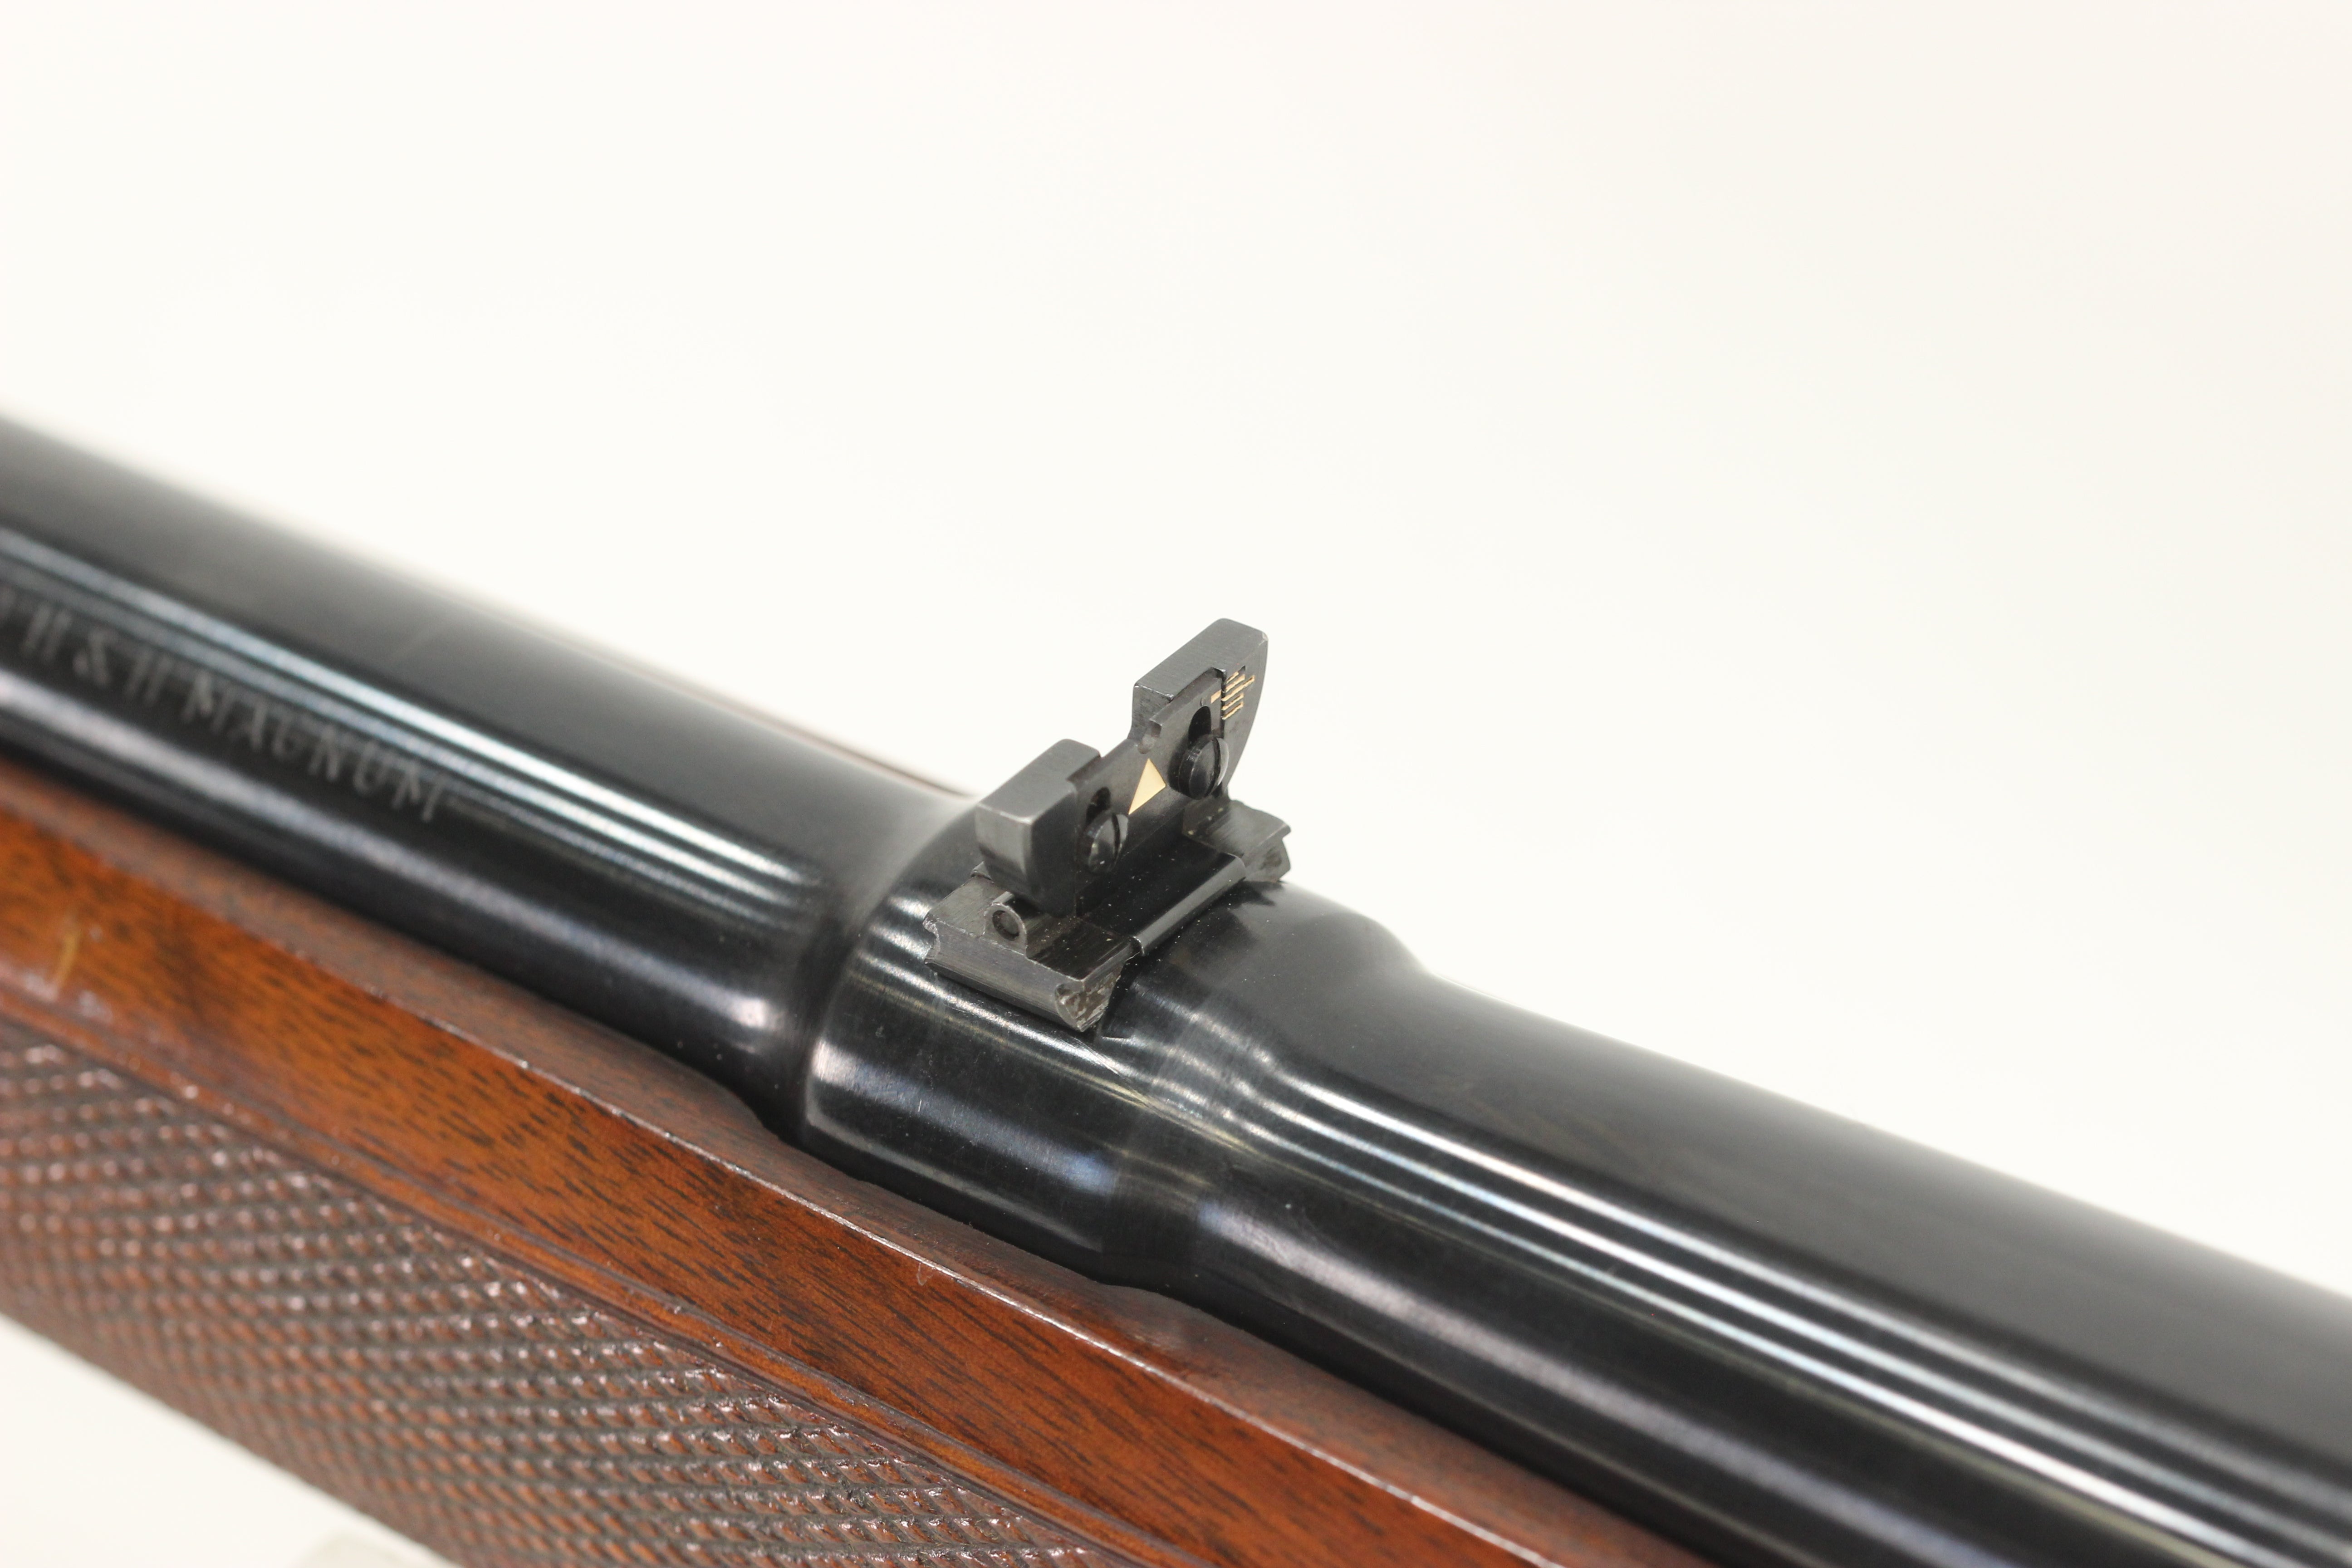 .300 H&H Mag Standard Rifle - 1958